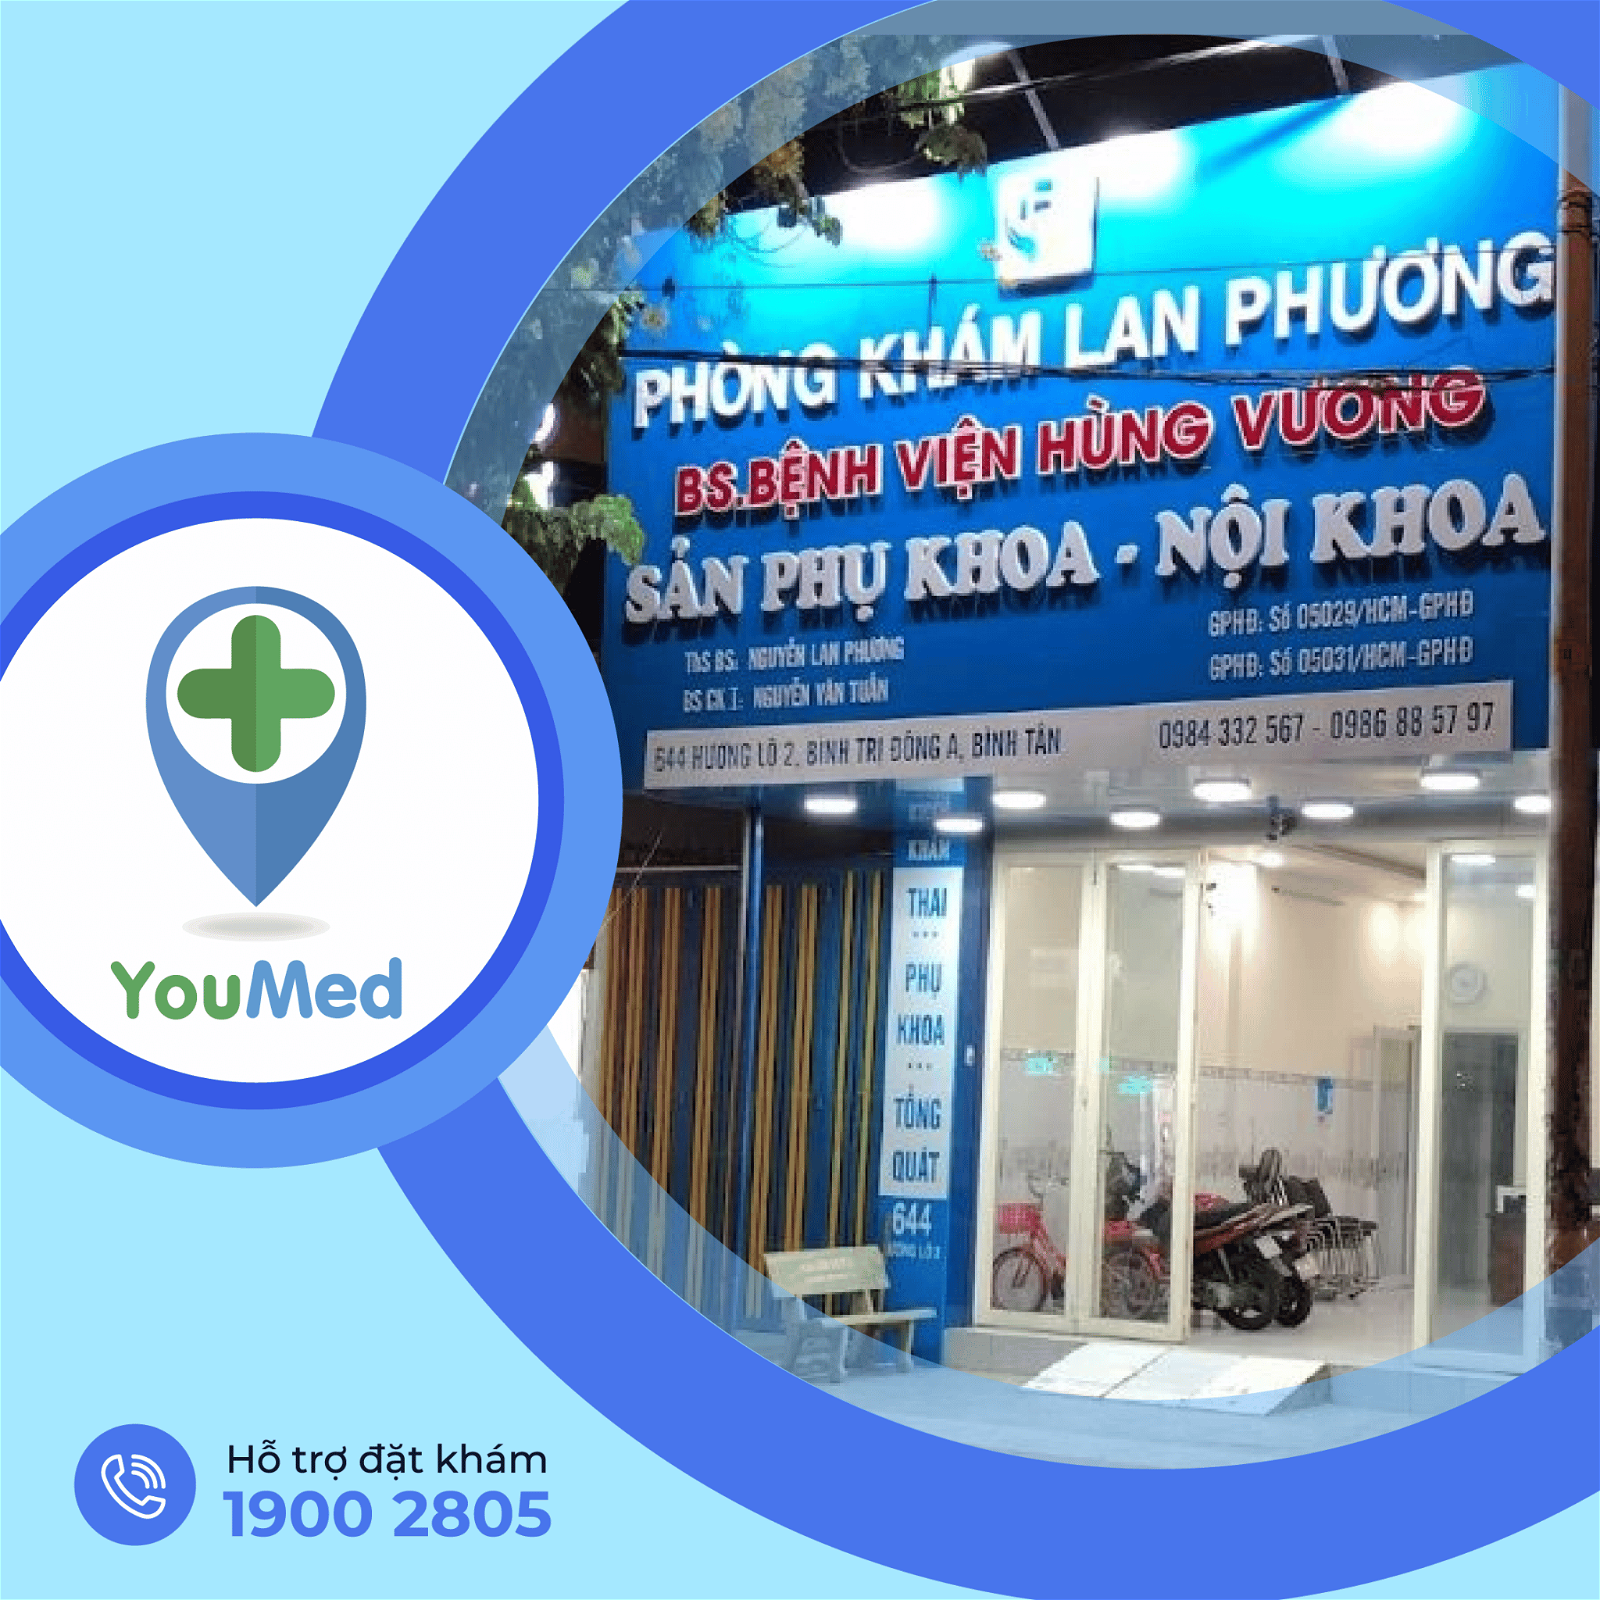 Phòng khám Sản phụ khoa – ThS.BS Nguyễn Lan Phương